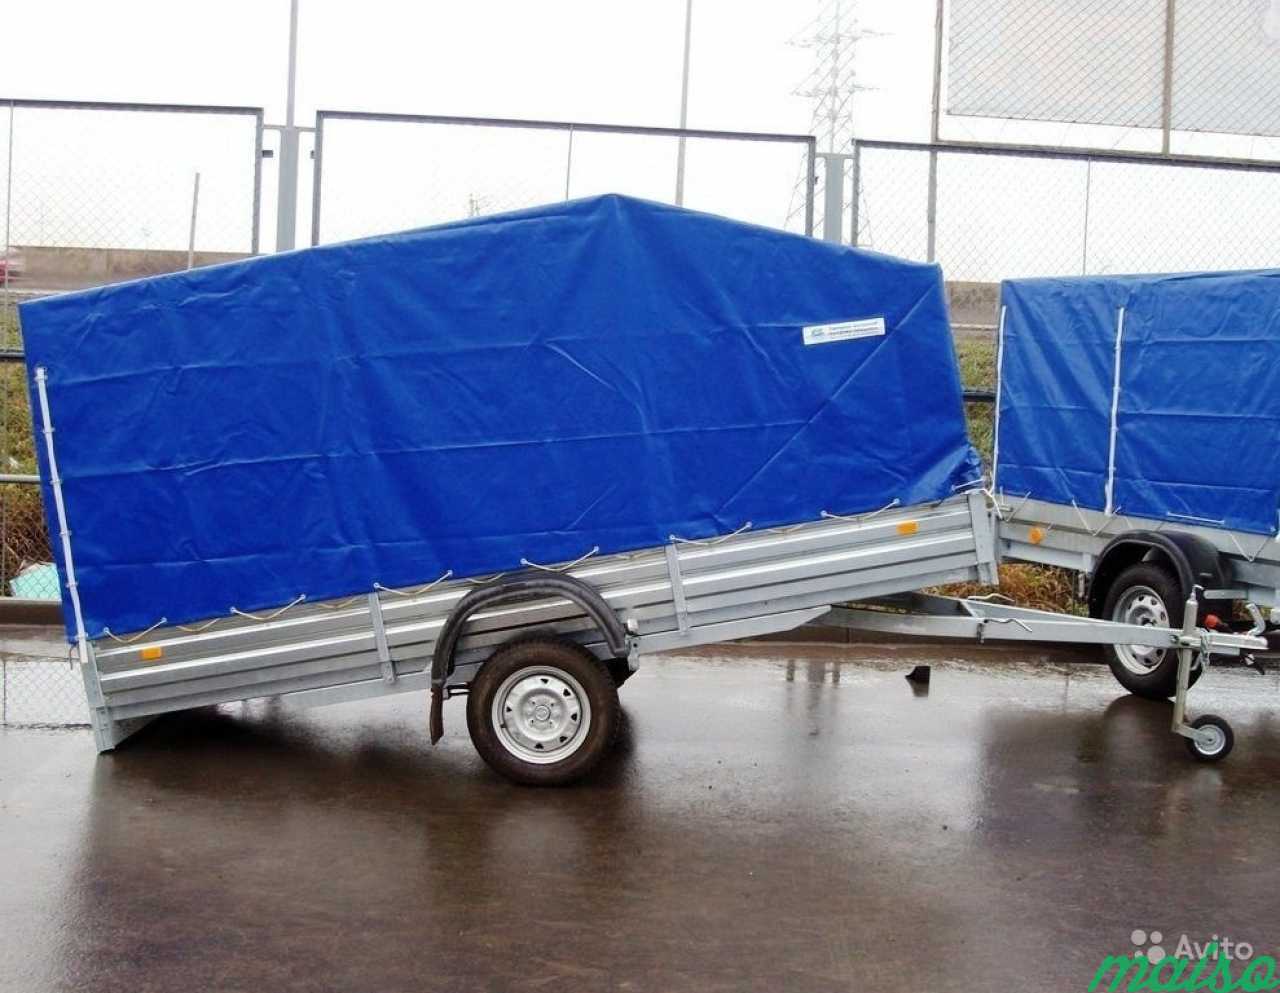 Прицеп (на рессорах), кузов 3.5х1.5 метра в Санкт-Петербурге. Фото 2